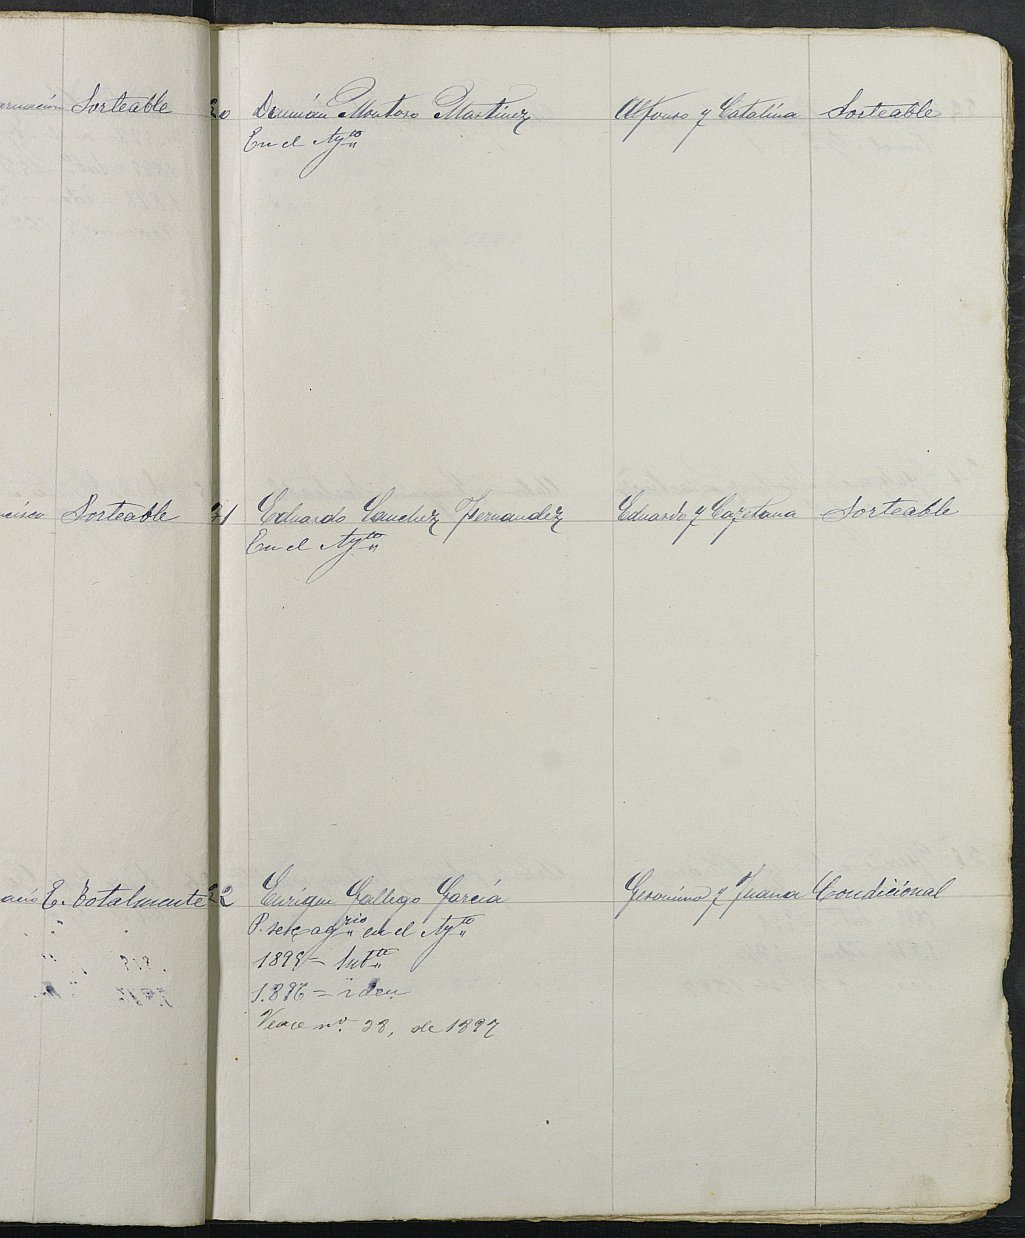 Relación de individuos declarados soldados e ingresados en Caja de la Sección 4ª del Ayuntamiento de Cartagena de 1894.